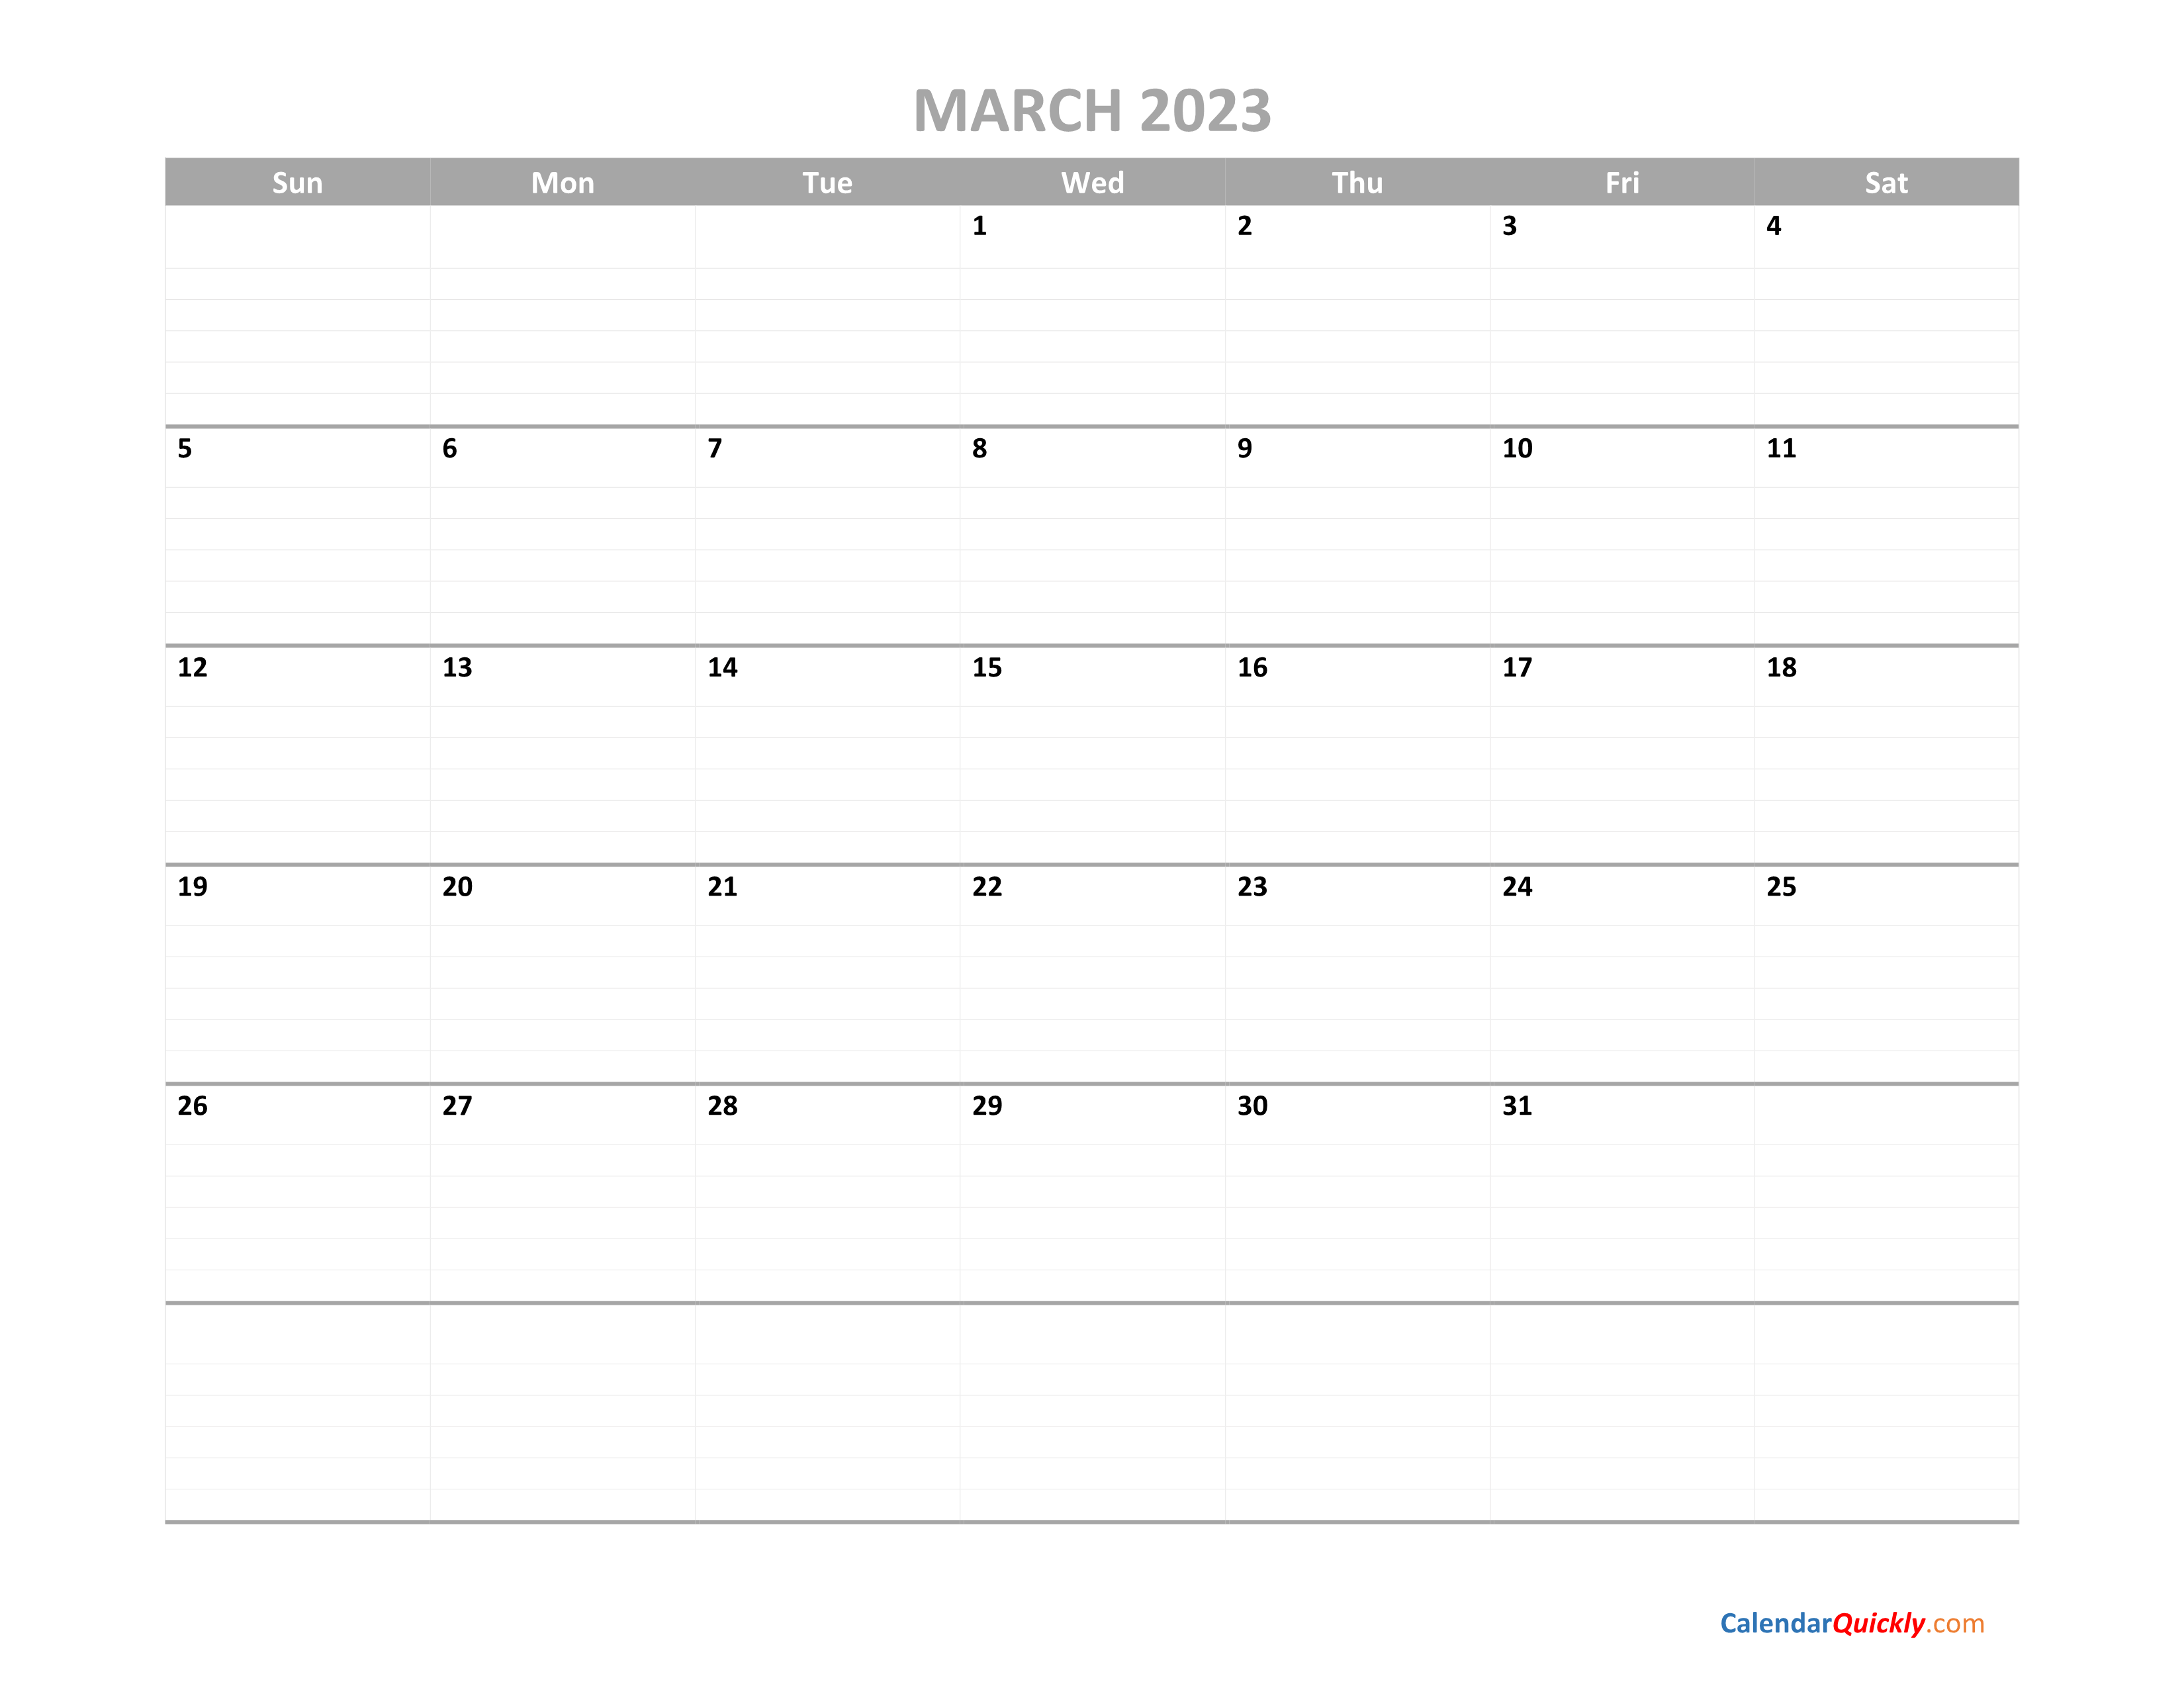 march-calendar-2023-printable-calendar-quickly